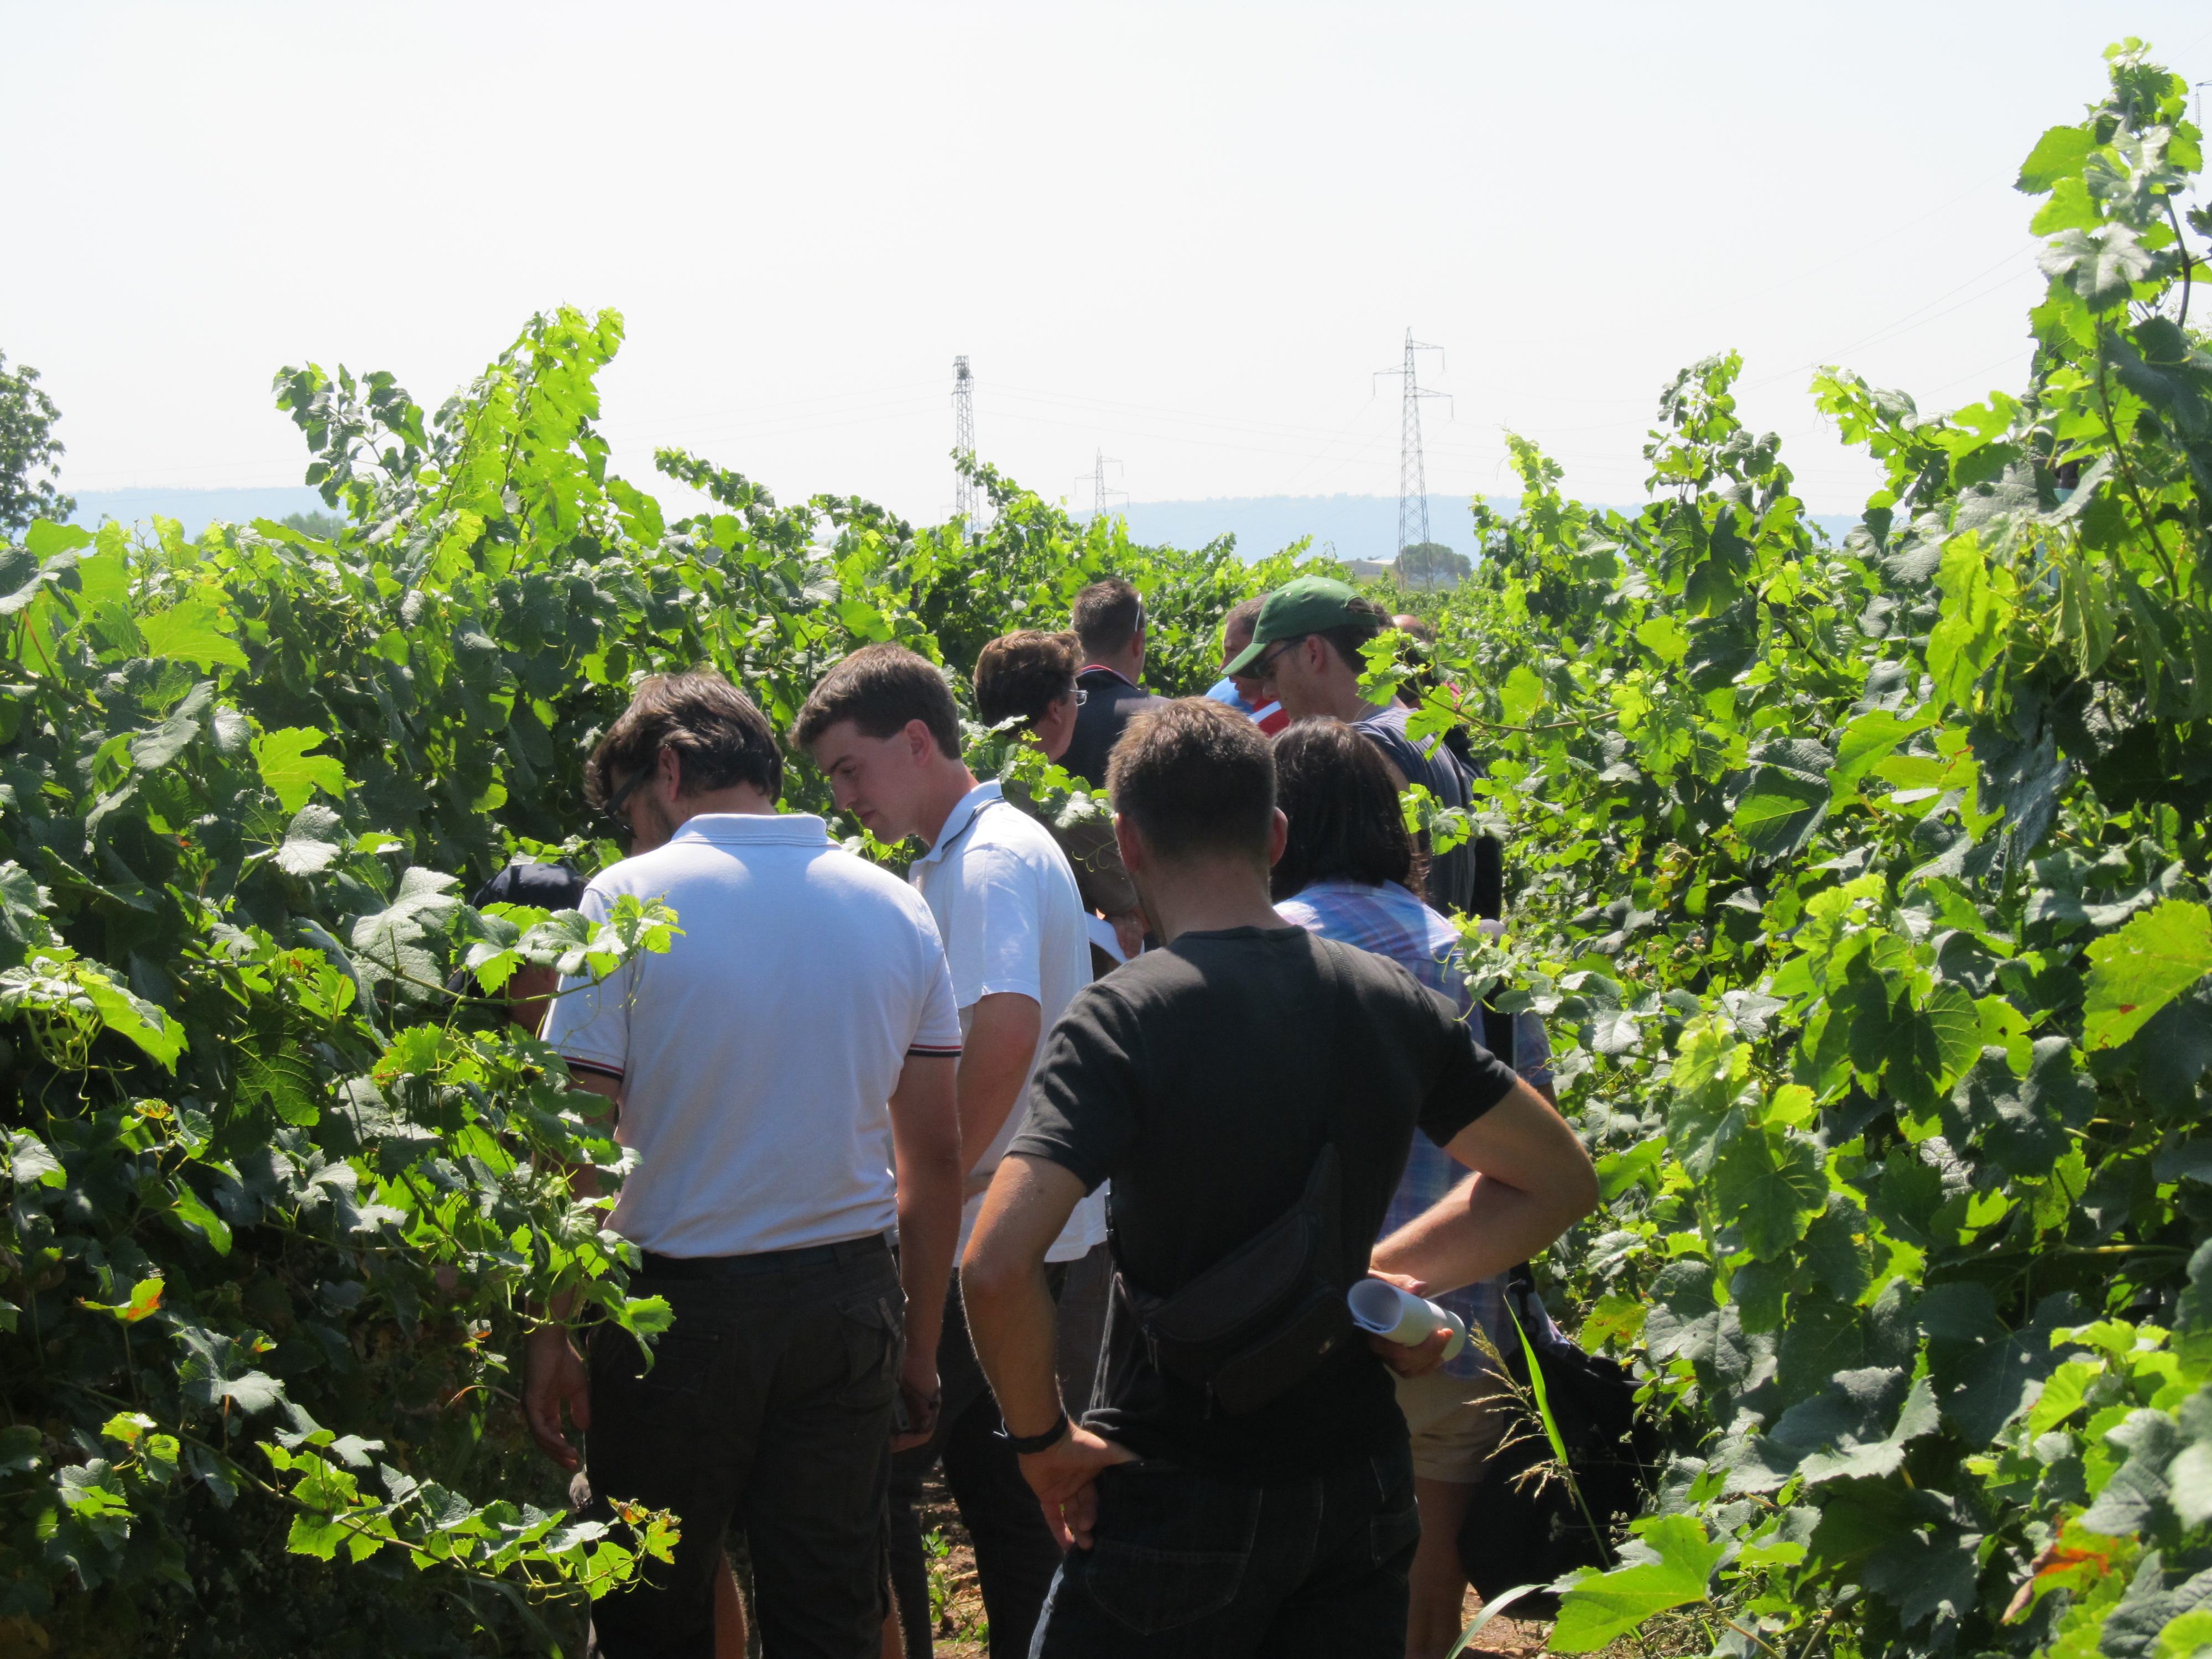 Vinogradi v Krminu in Neblu